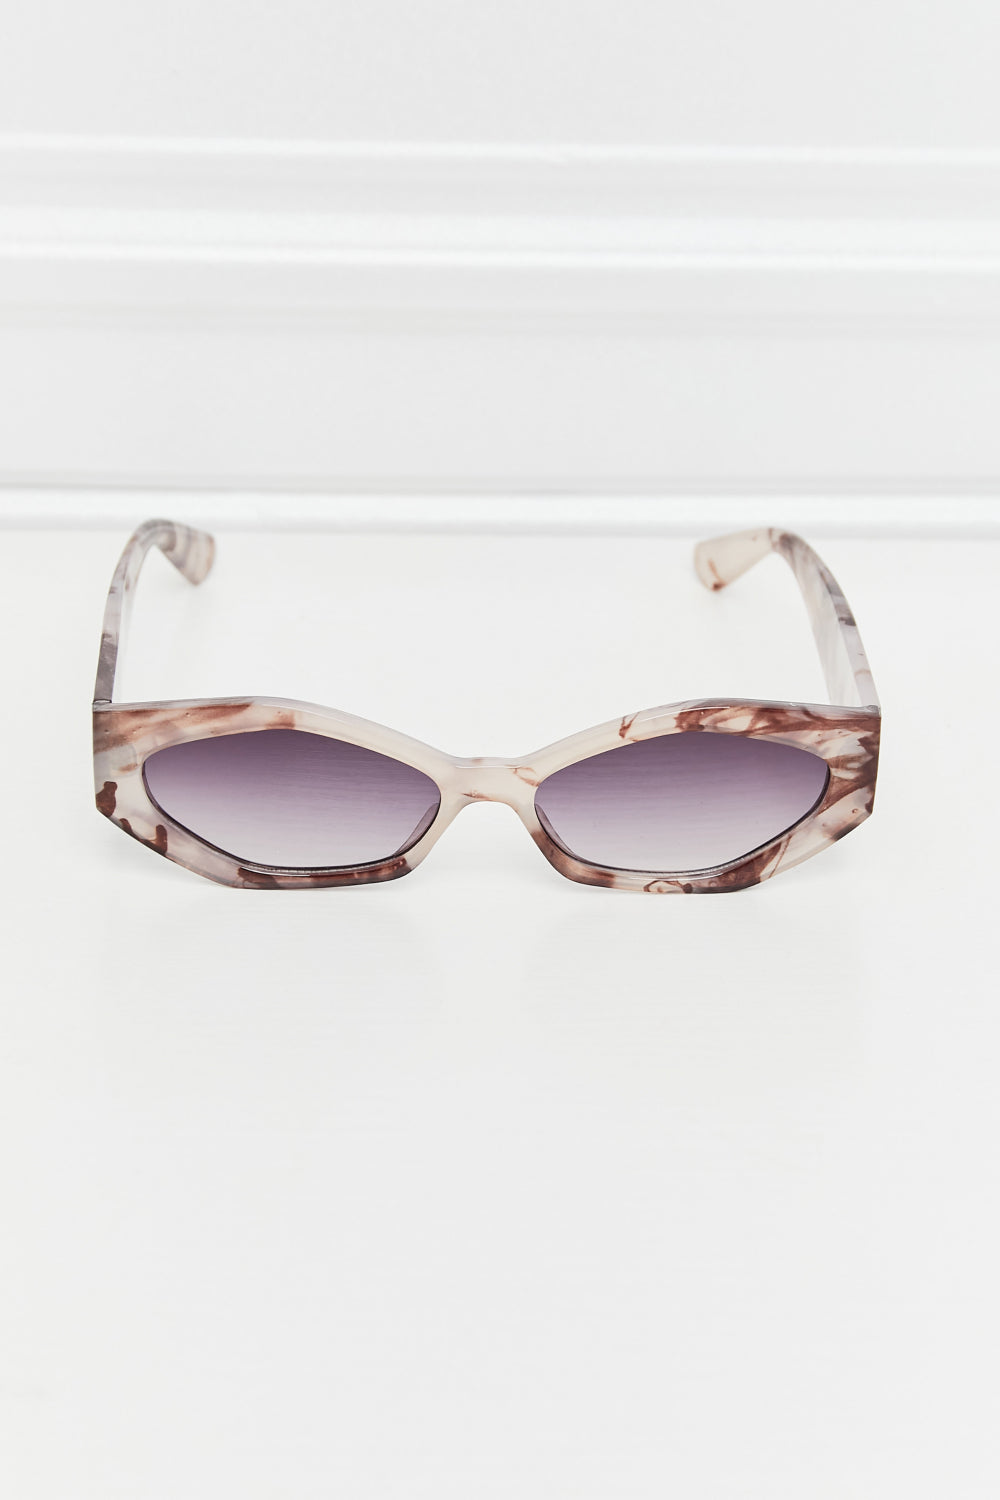 [HC] Polycarbonate Frame Wayfarer Sunglasses